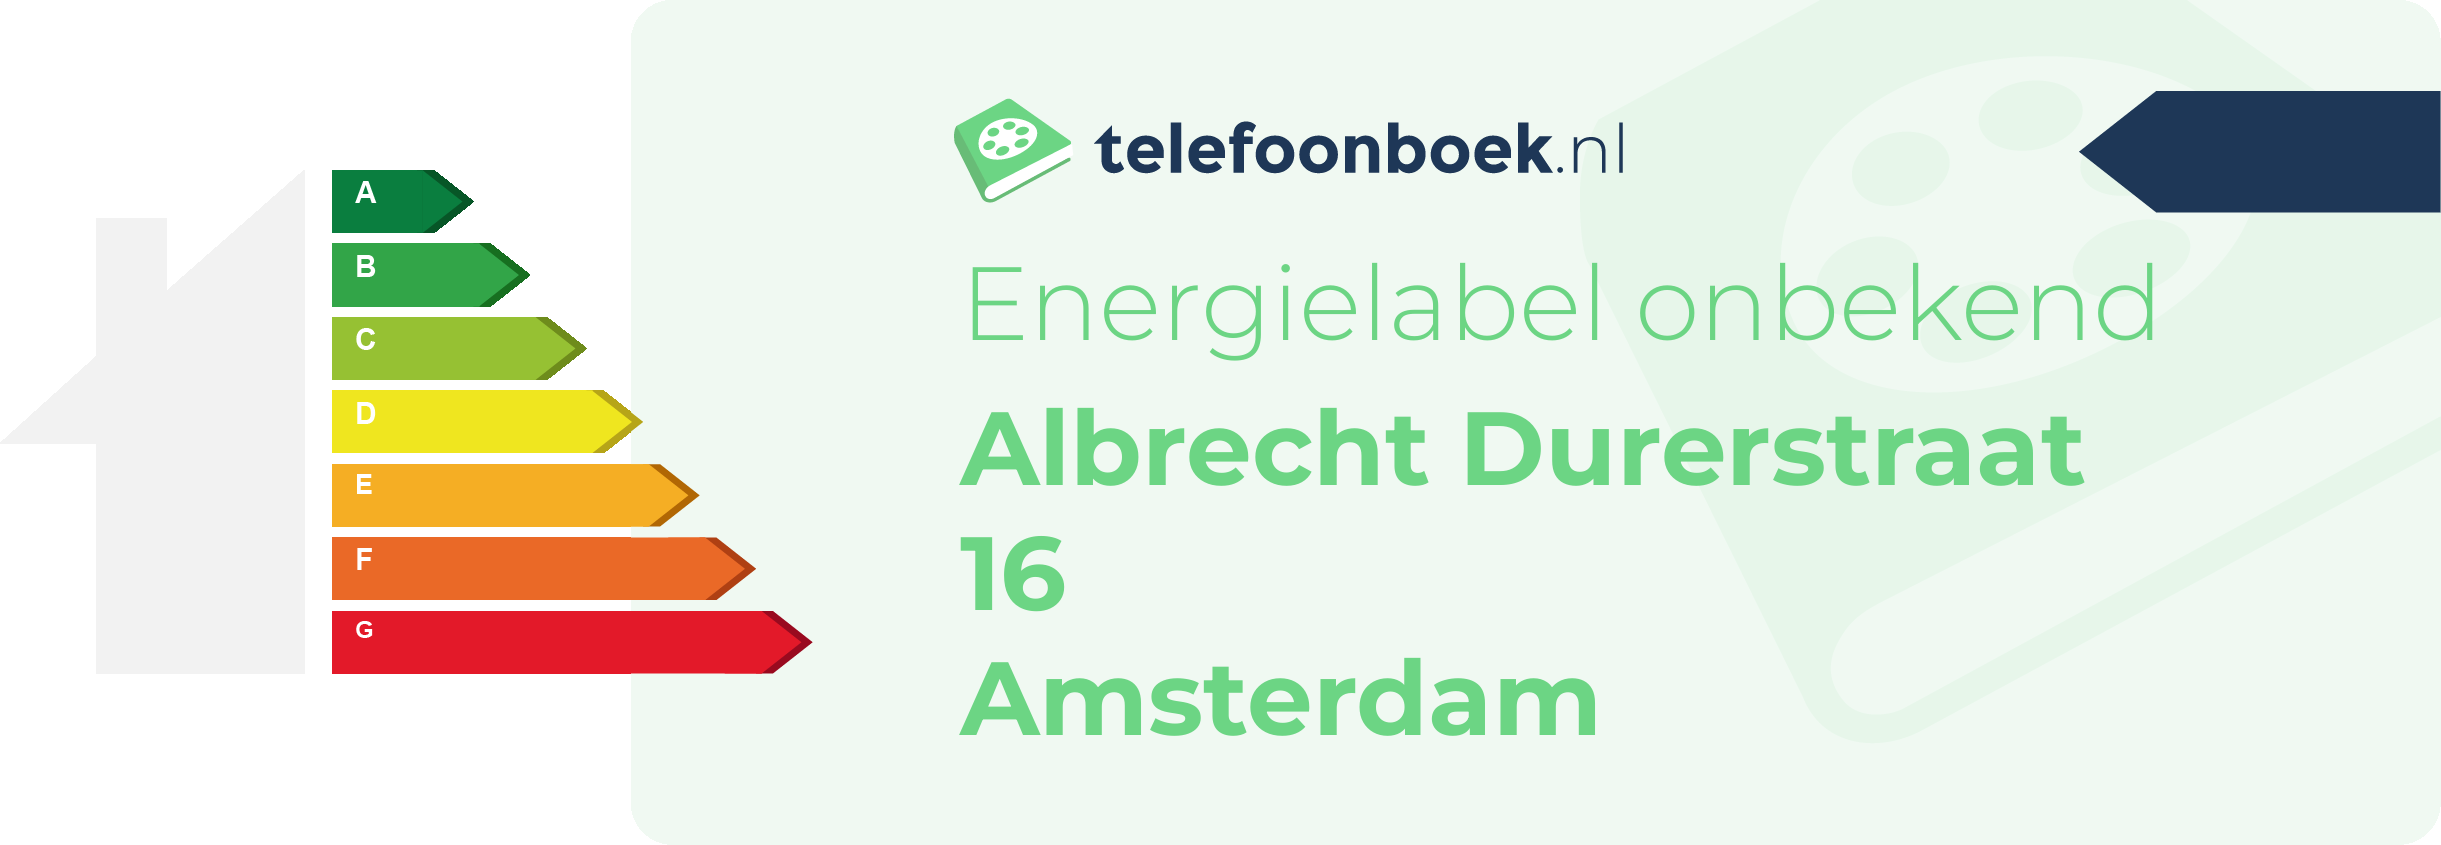 Energielabel Albrecht Durerstraat 16 Amsterdam